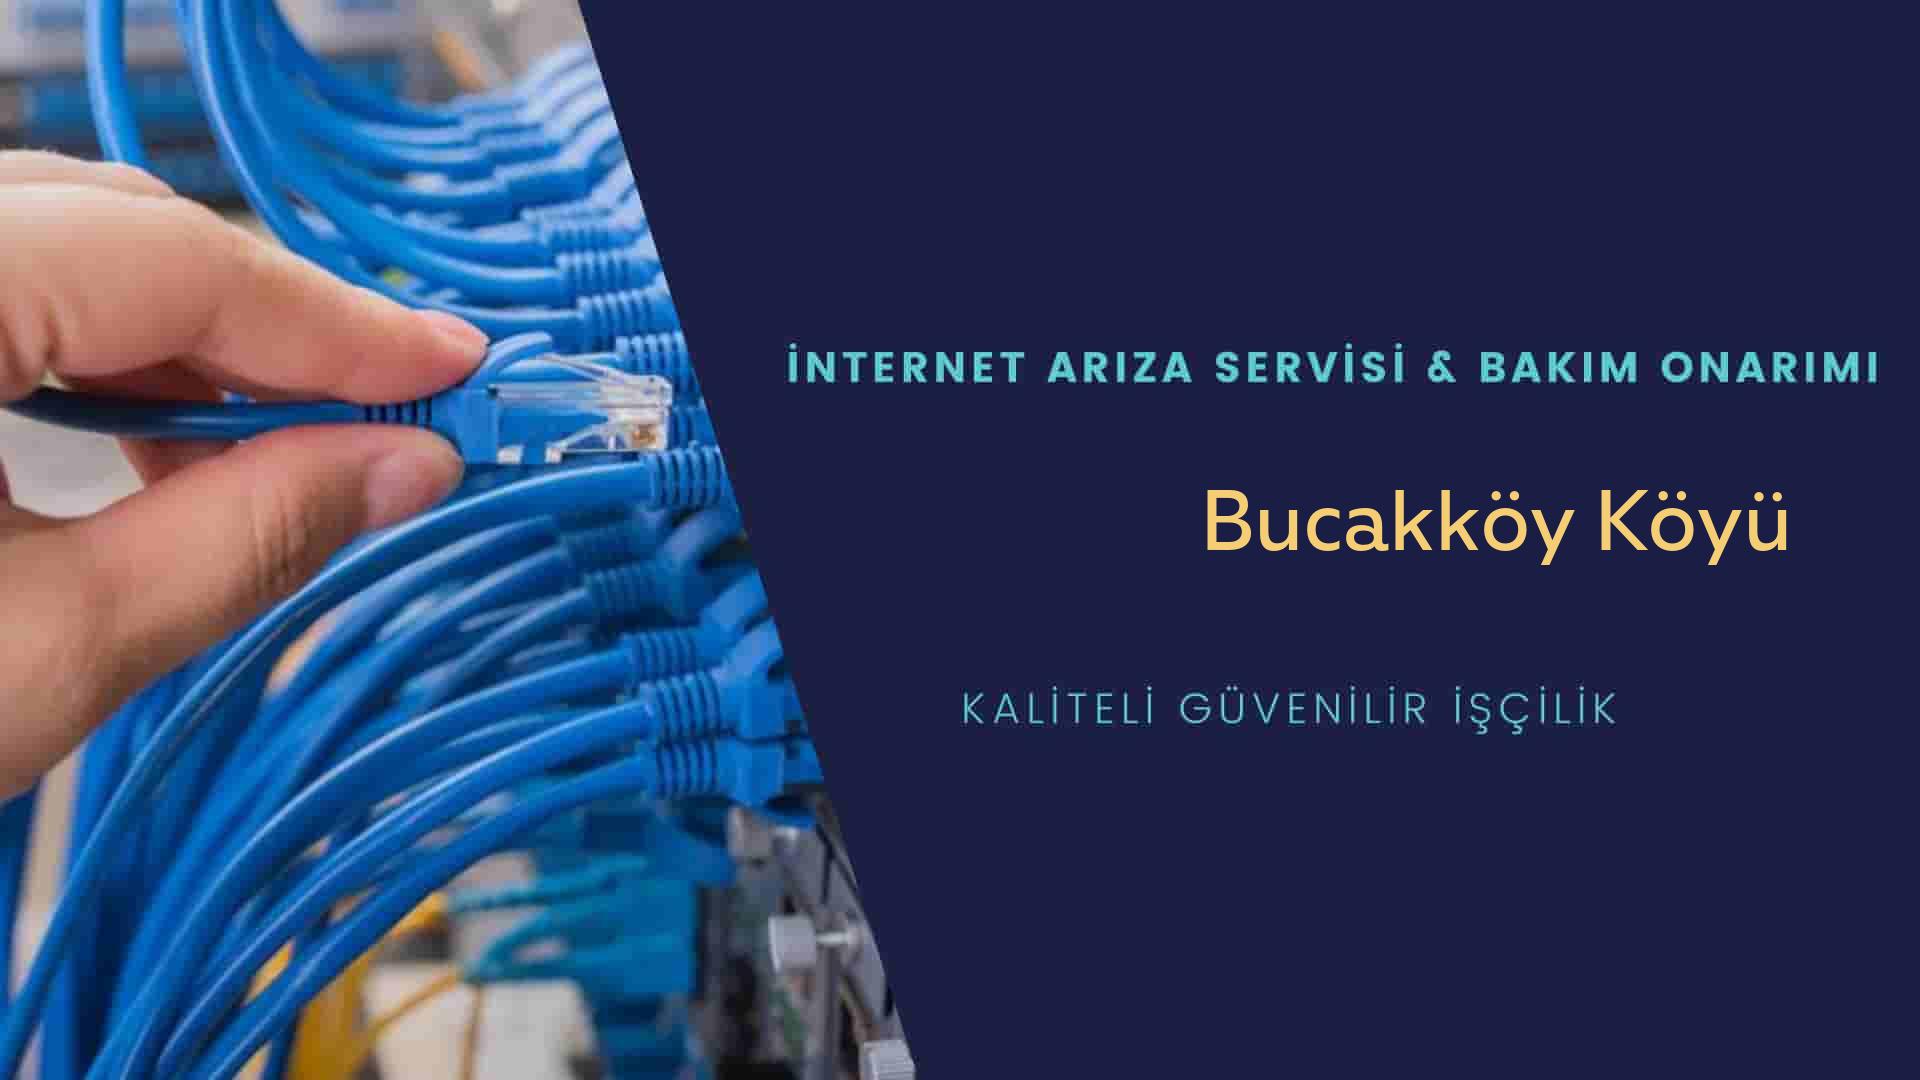 Bucakköy Köyü internet kablosu çekimi yapan yerler veya elektrikçiler mi? arıyorsunuz doğru yerdesiniz o zaman sizlere 7/24 yardımcı olacak profesyonel ustalarımız bir telefon kadar yakındır size.